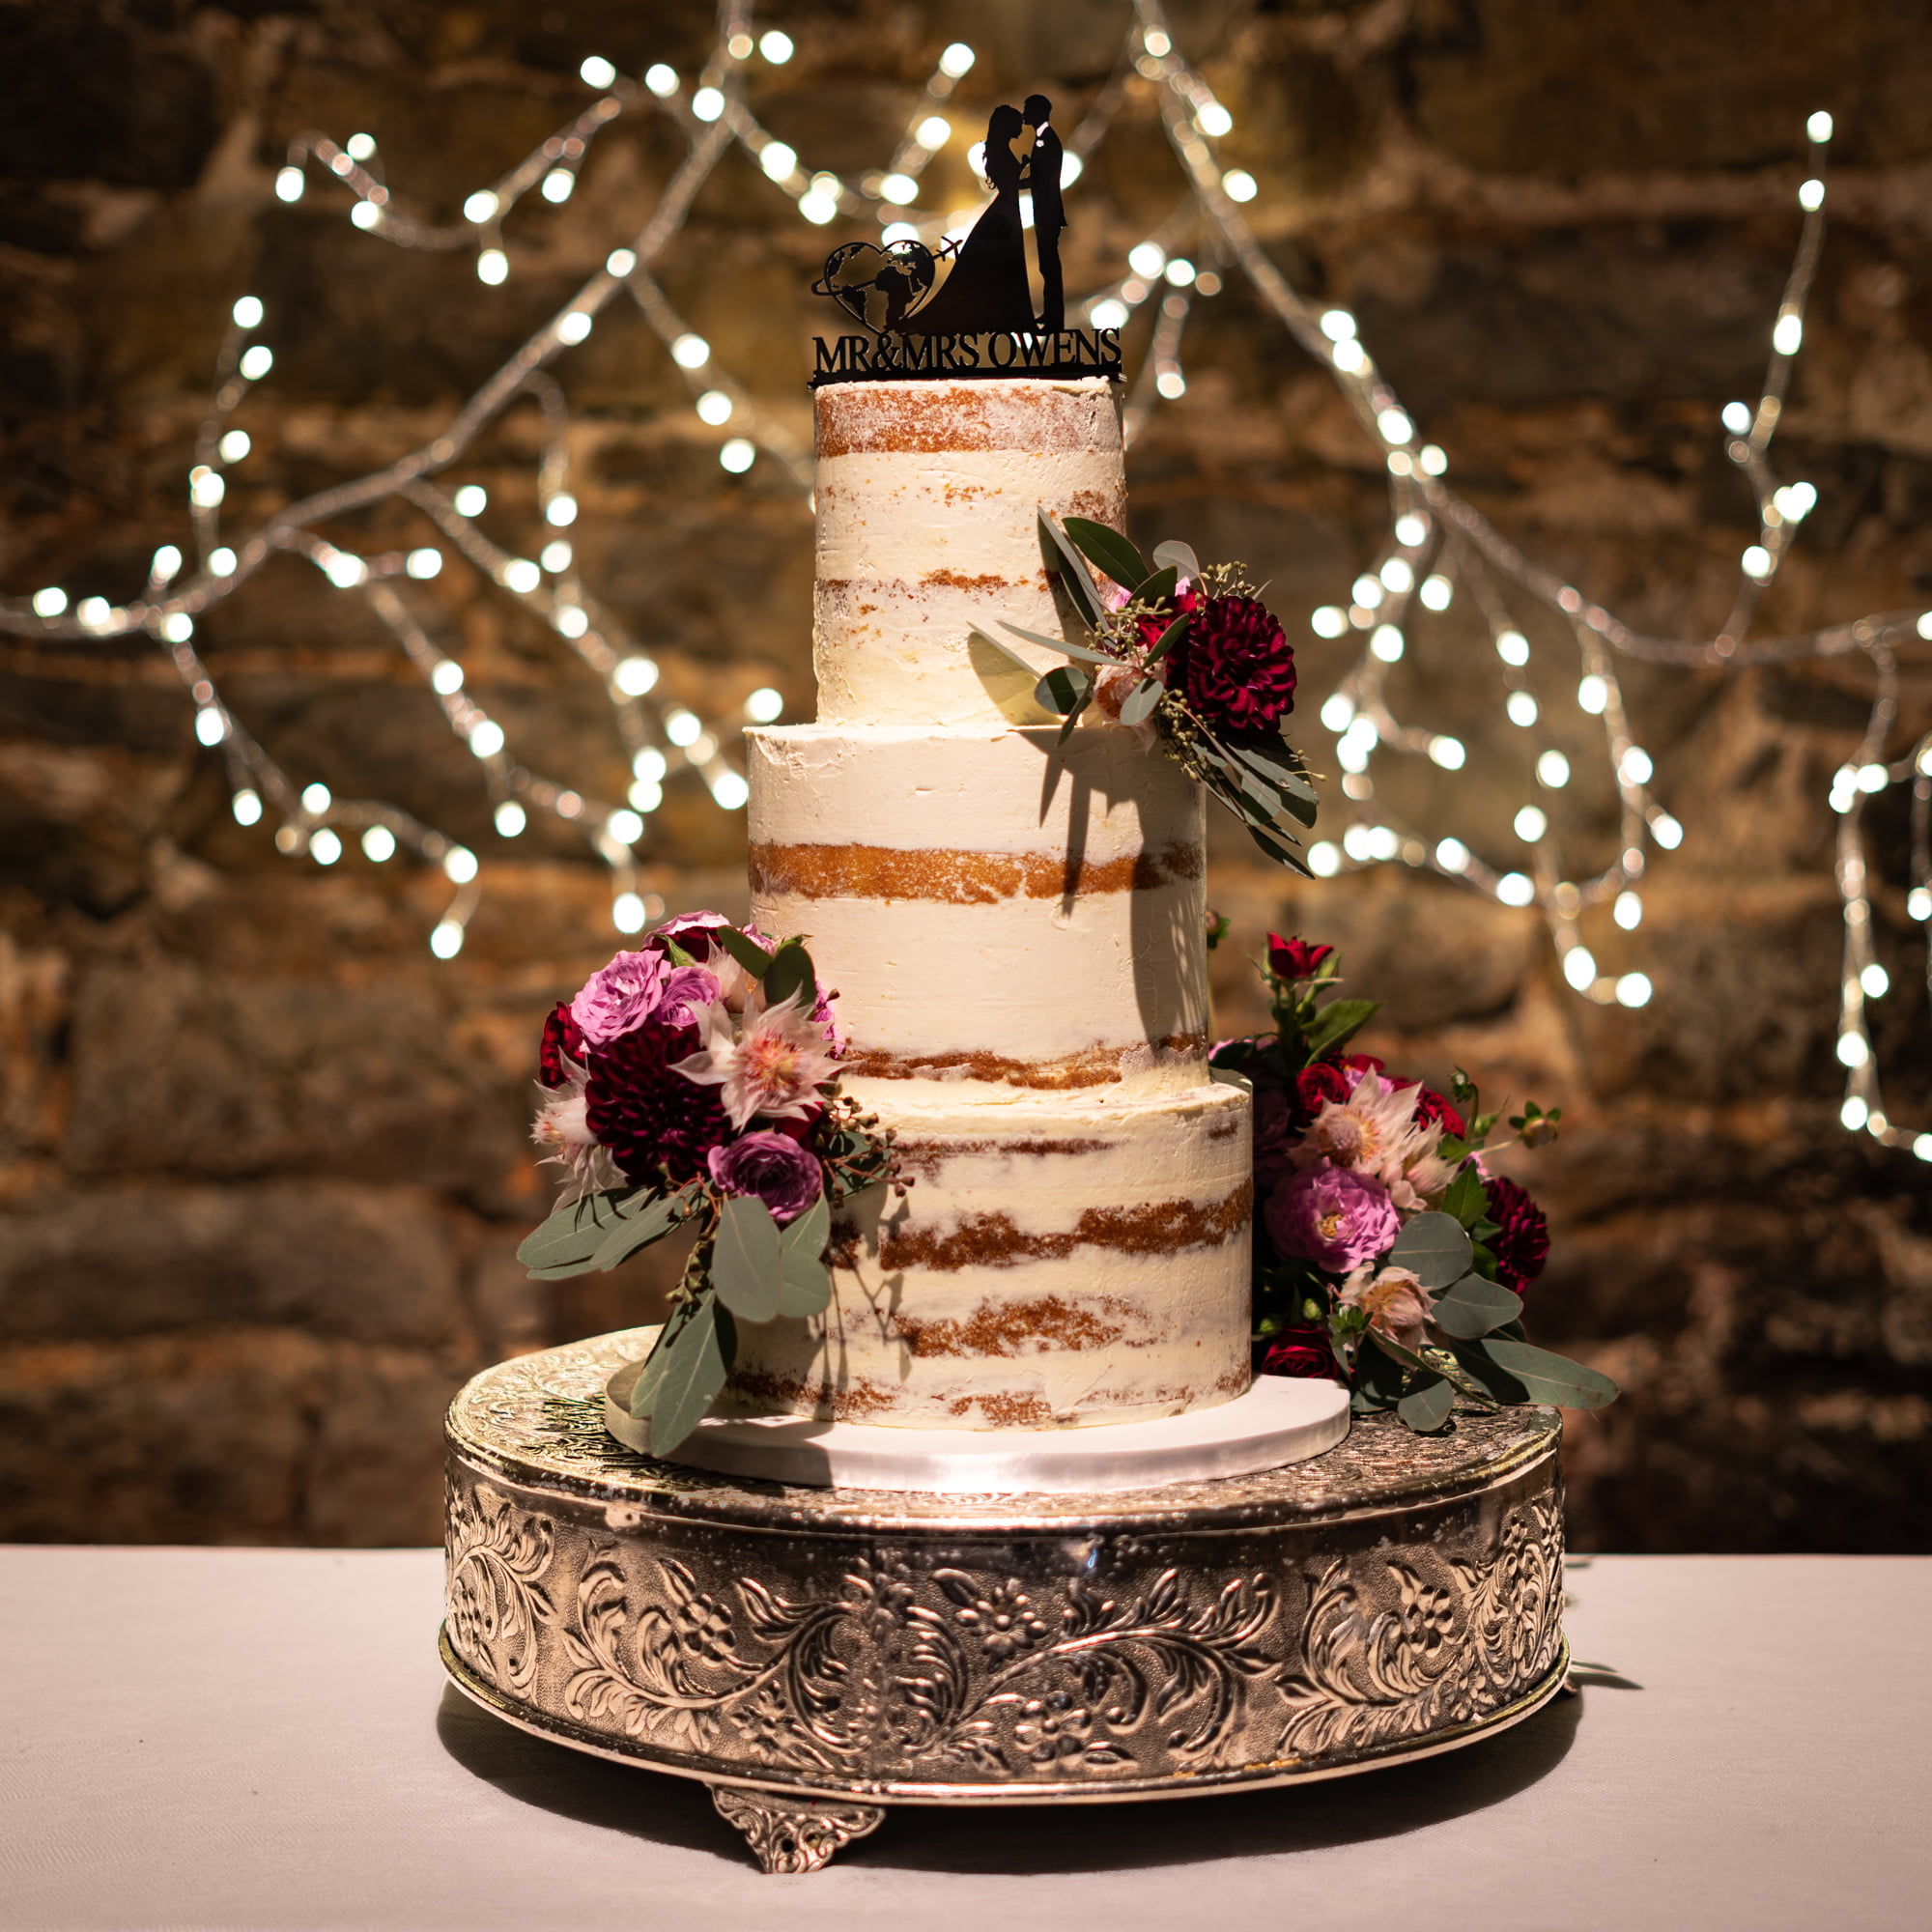 3 Tier Sunflowers & Burlap Wedding Cake - Rexburg Cakes